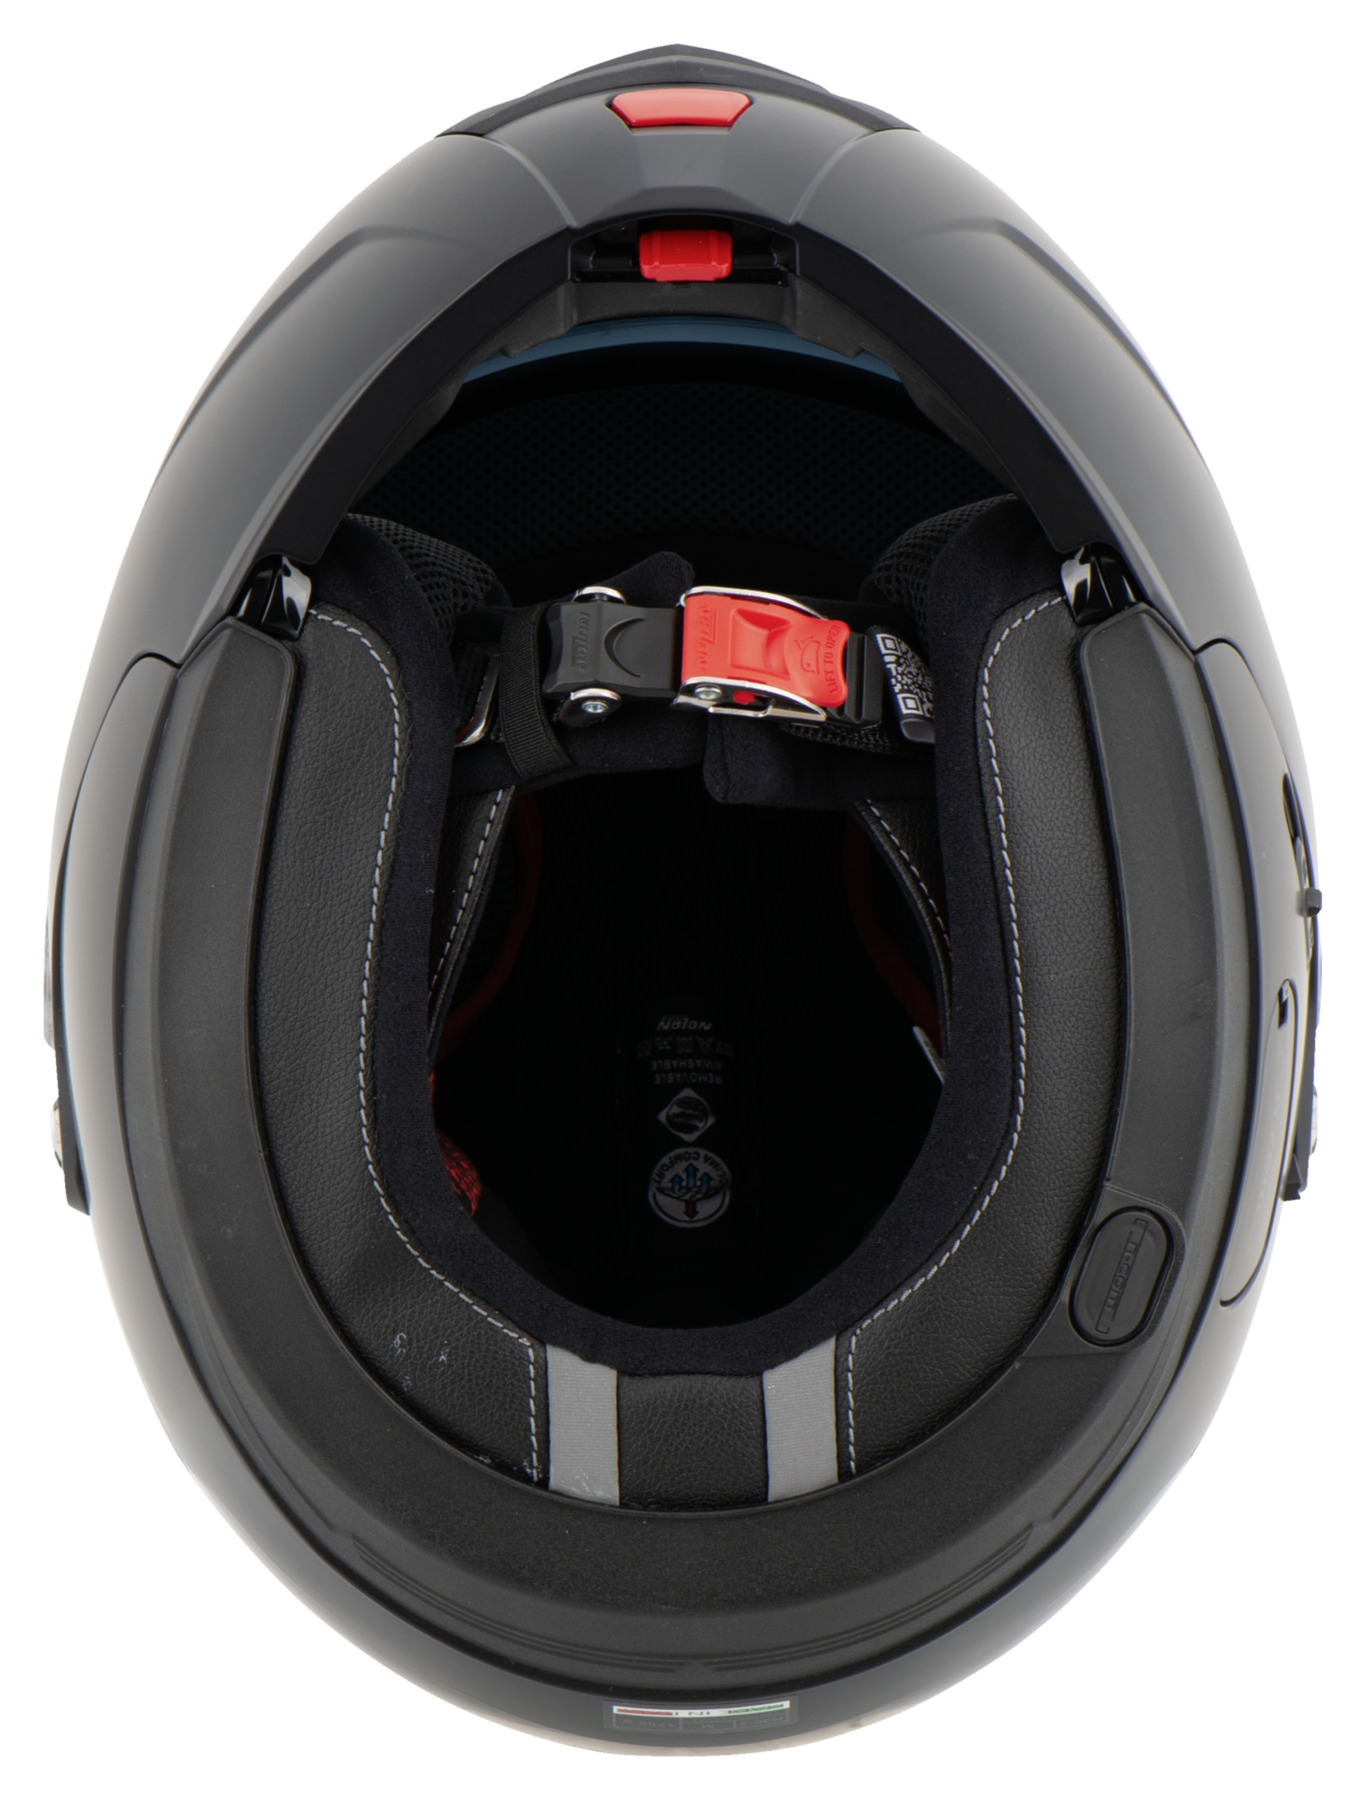 Buy Nolan N90-2 LE Flip-Up Helmet | Louis motorcycle clothing and ...